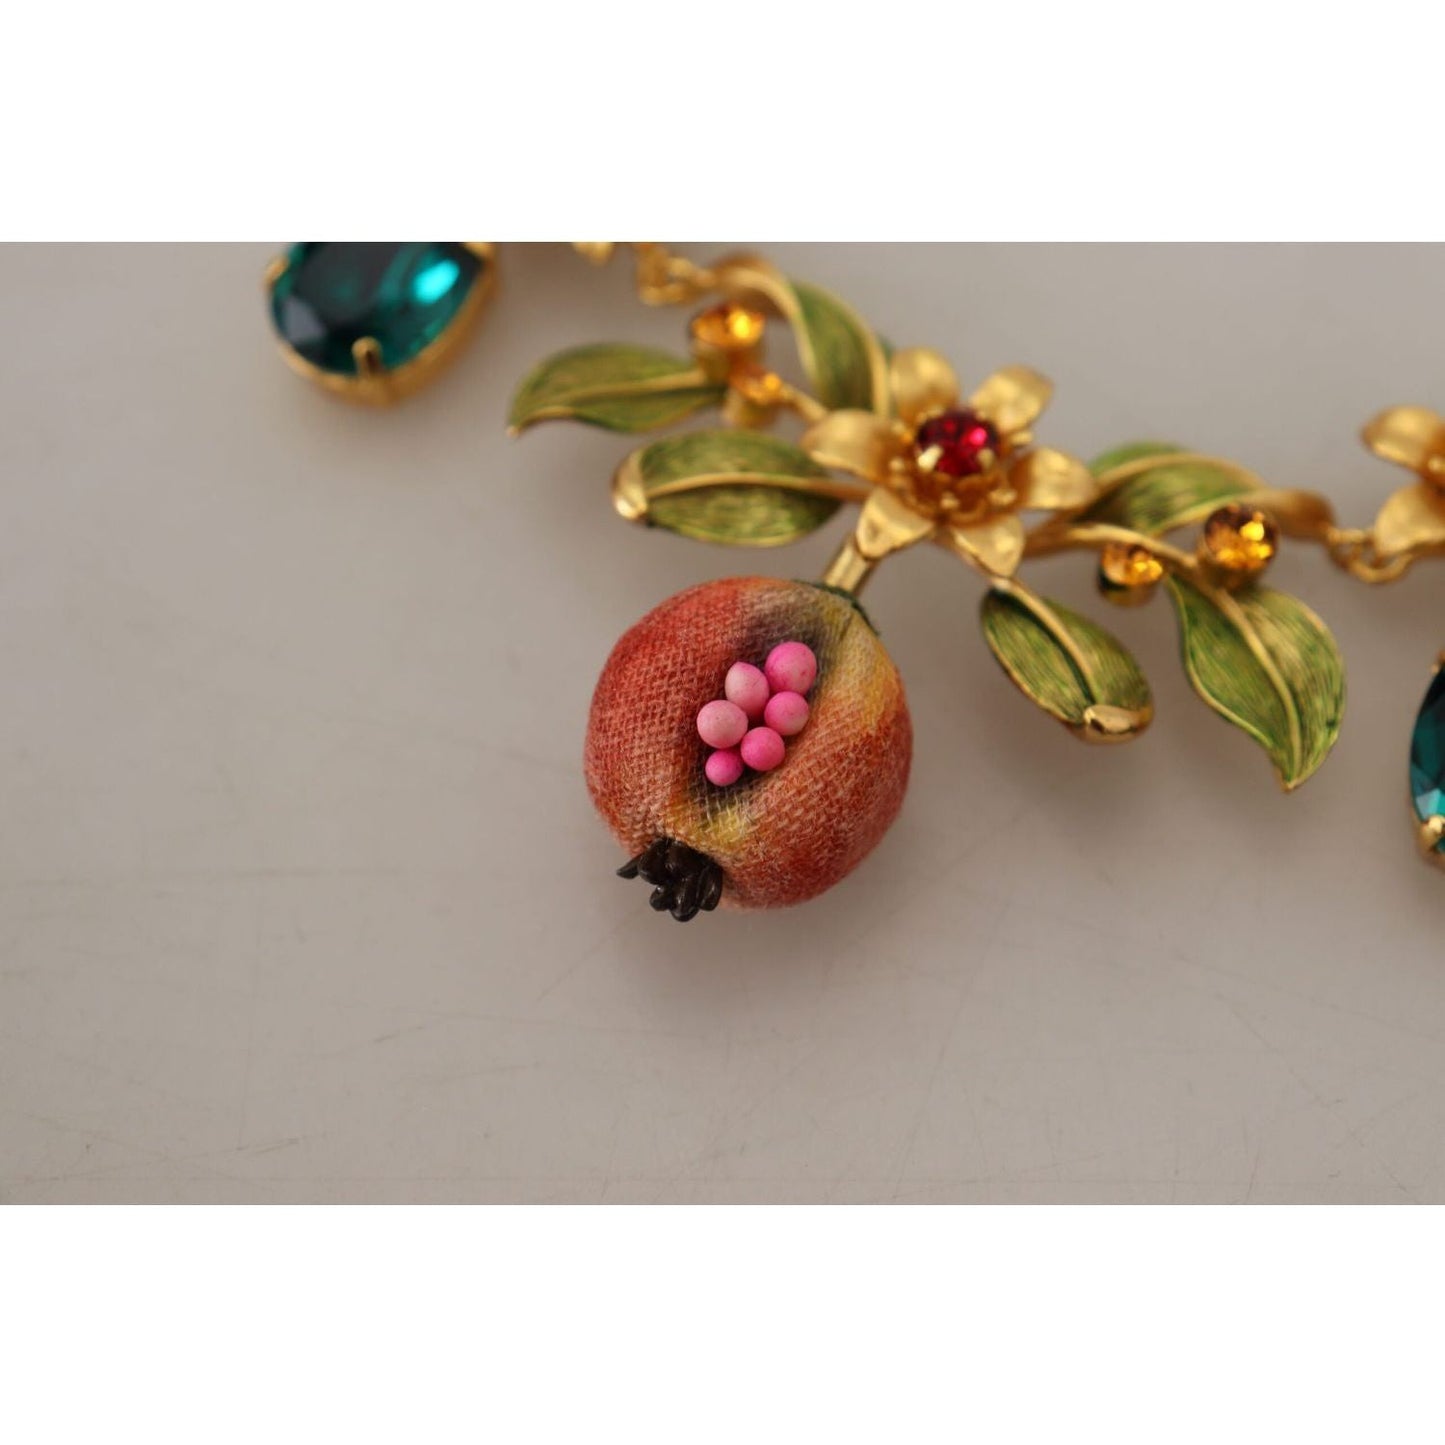 Dolce & Gabbana Elegant Floral Fruit Motif Gold Necklace gold-brass-crystal-logo-fruit-floral-statement-necklace IMG_7476-scaled-00d89218-c45.jpg